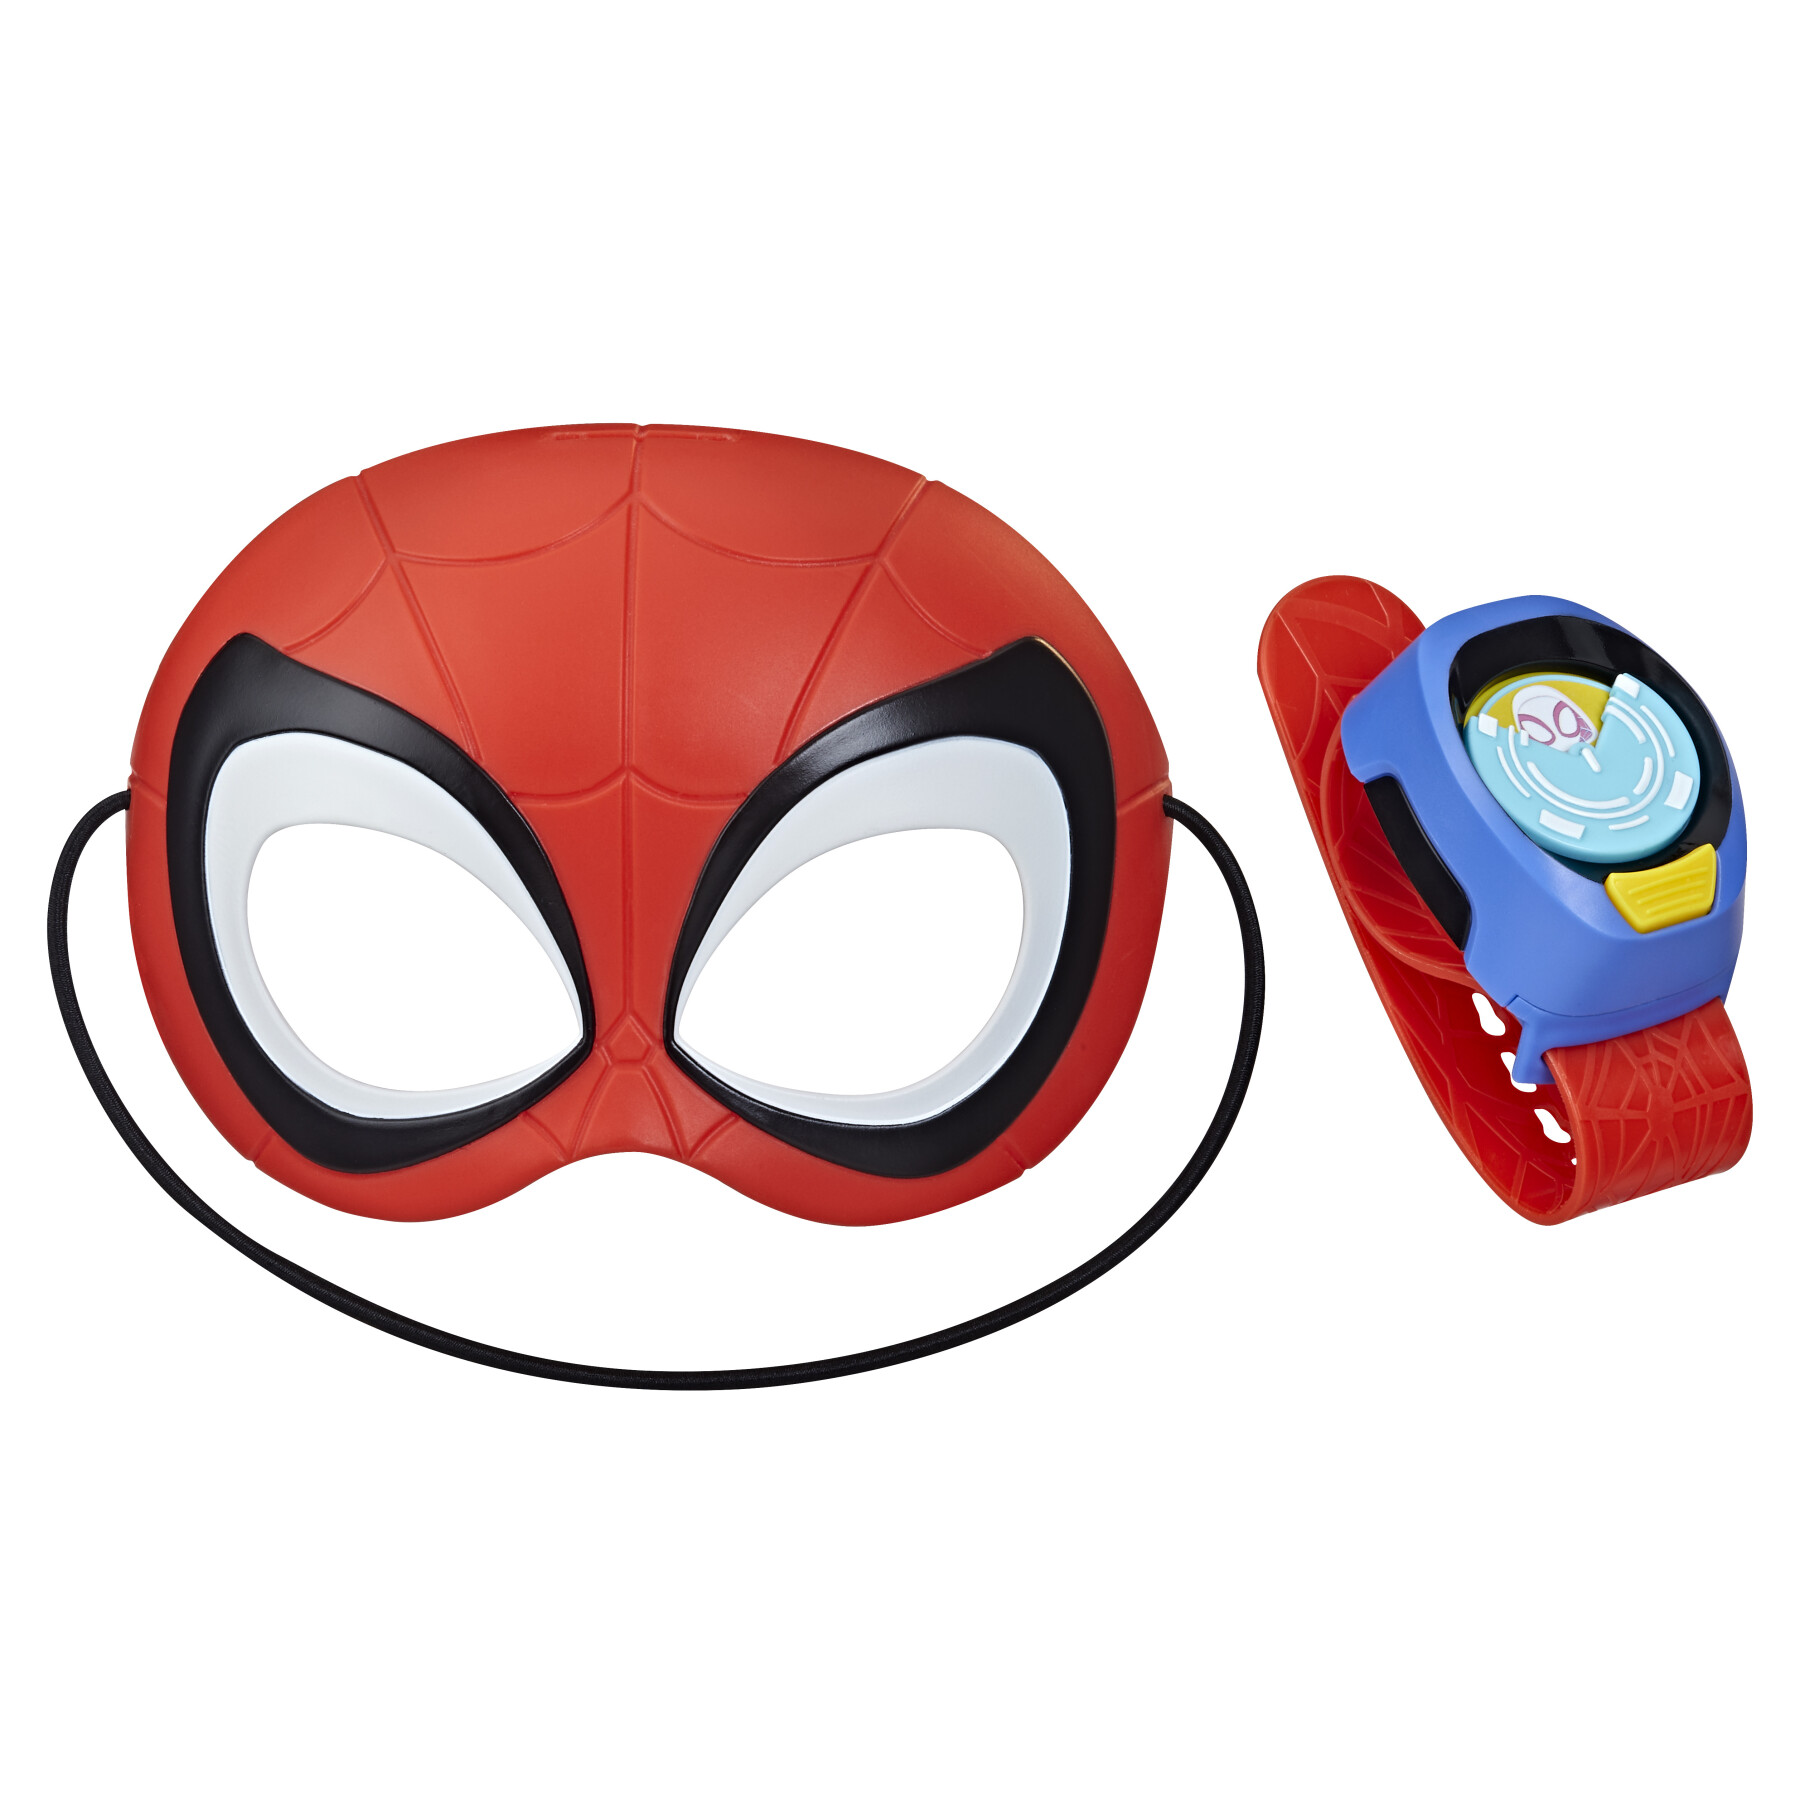 Hasbro marvel spidey e i suoi fantastici amici, set con orologio comm-link e maschera di spidey, giocattolo per il roleplay per età prescolare, dai 3 anni in su - SPIDEY, Spiderman